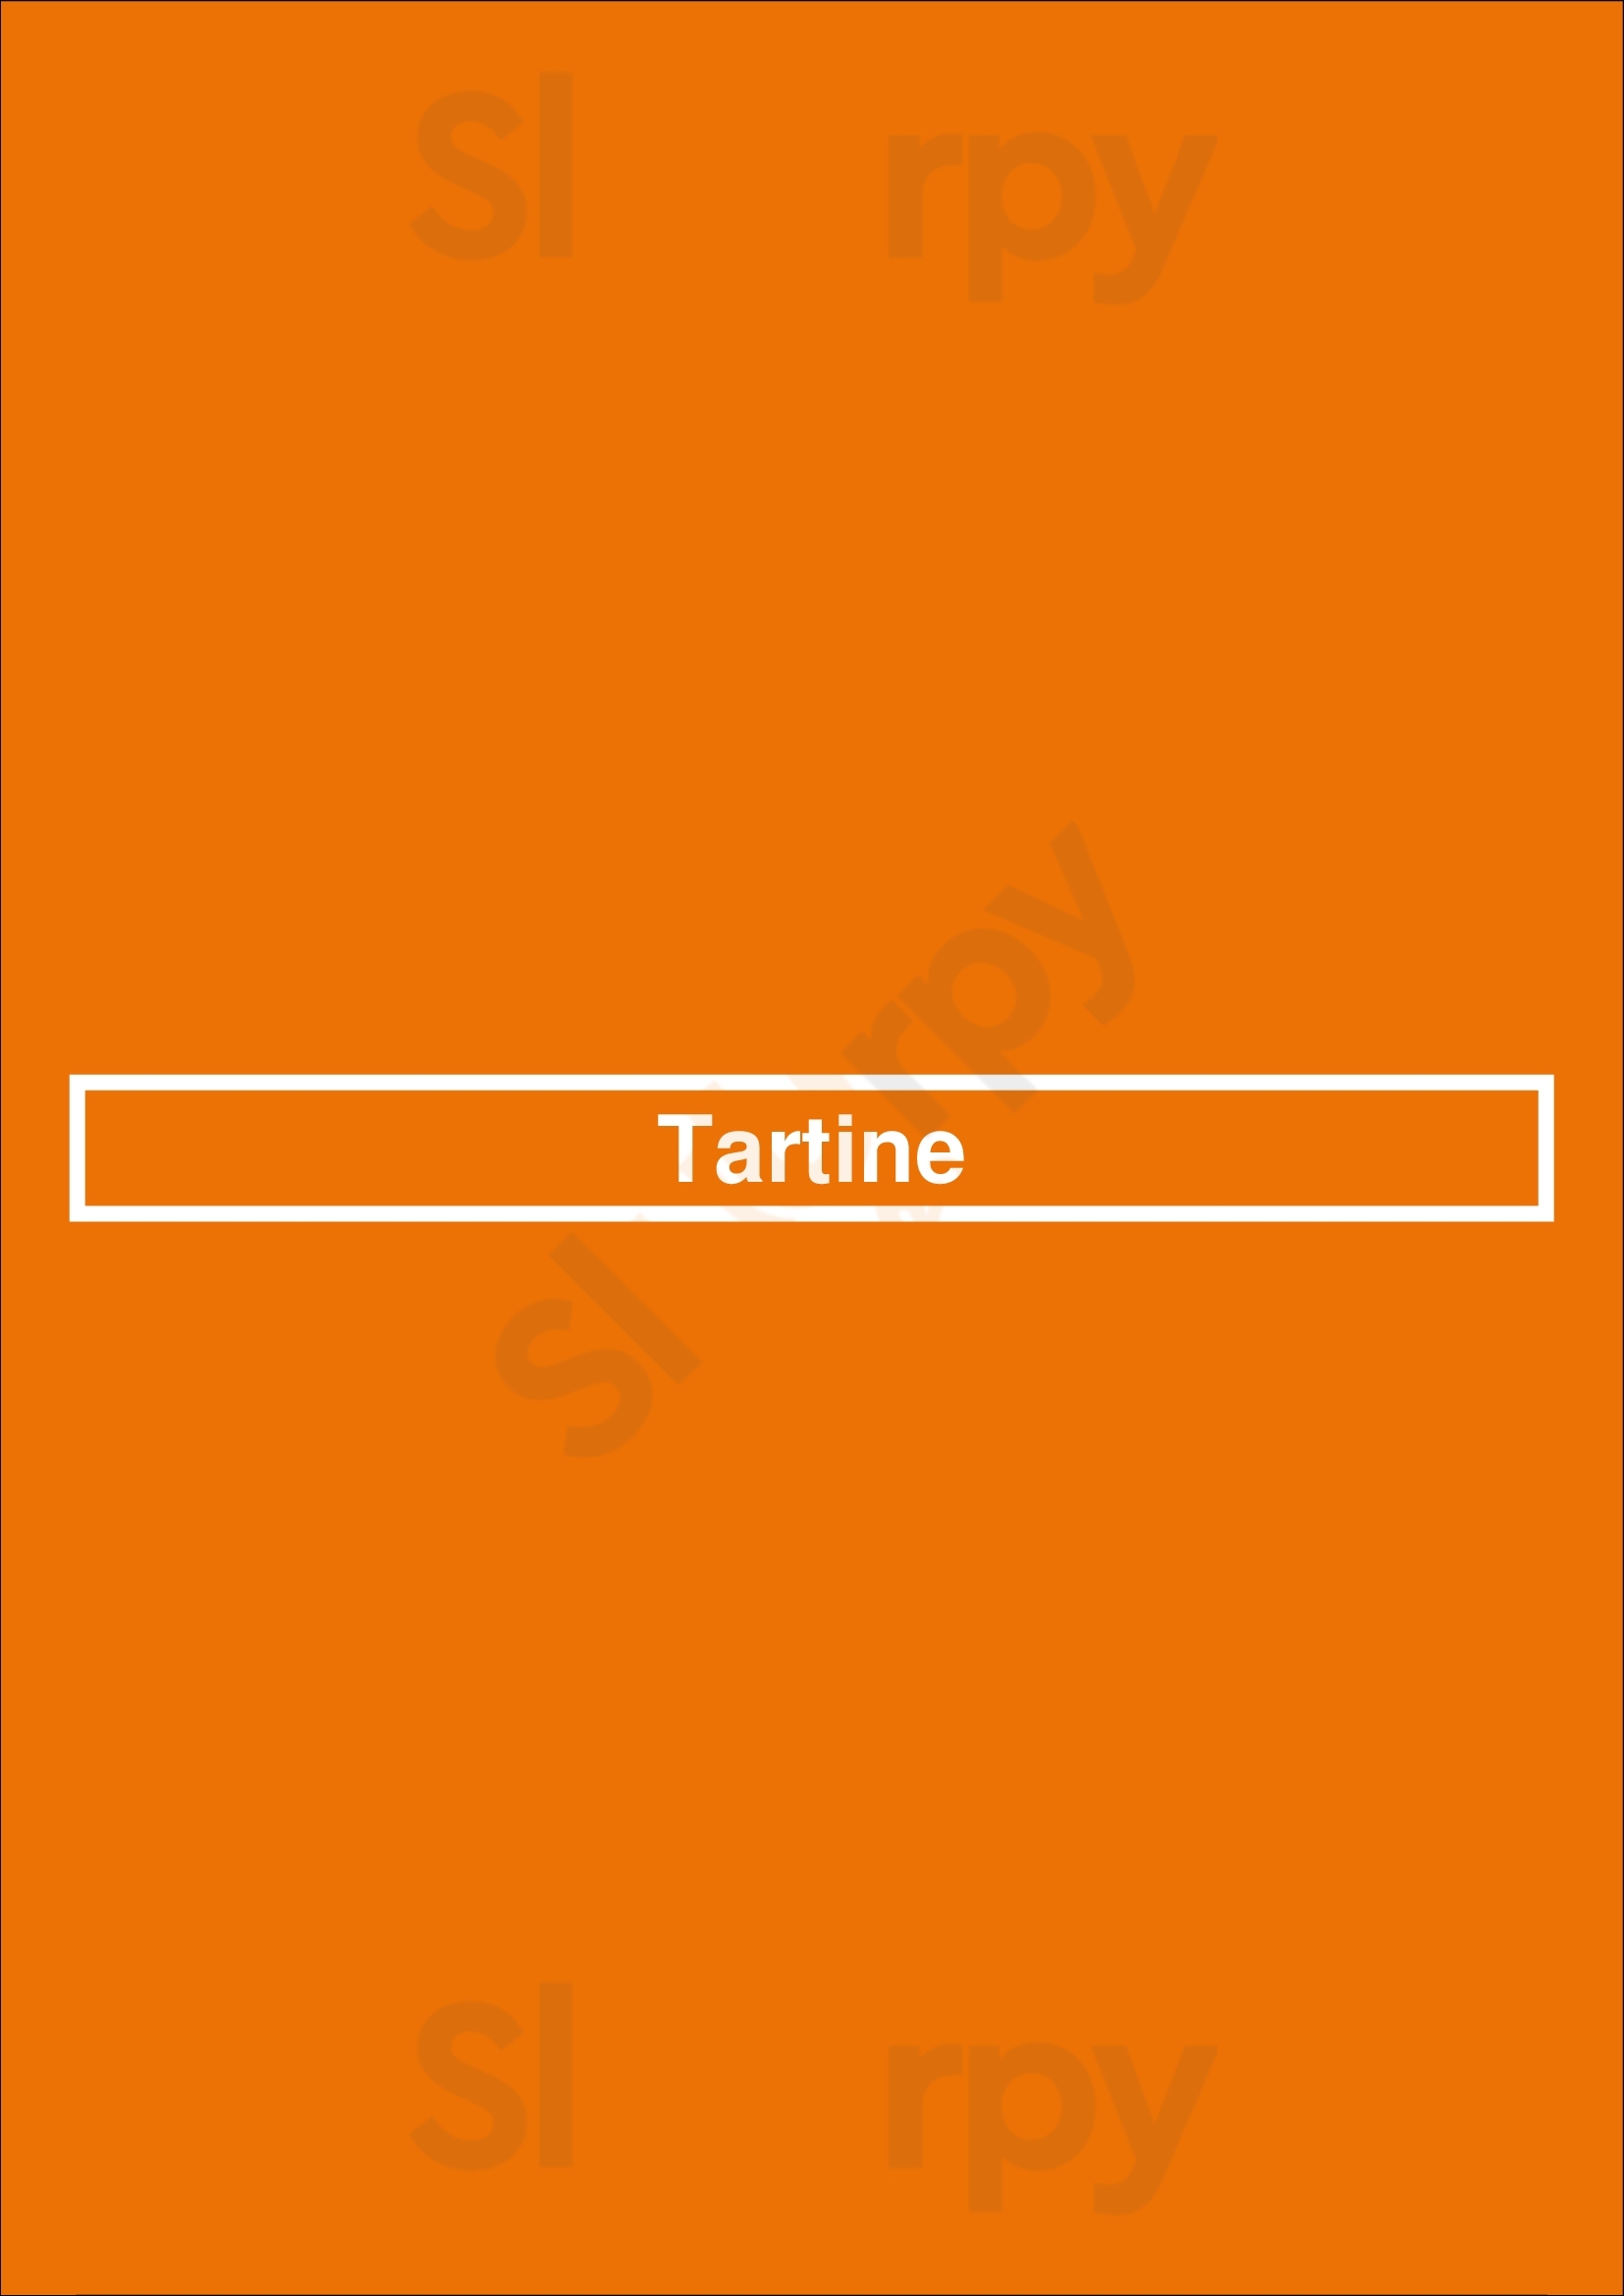 Cafe Tartine Courtrai Menu - 1